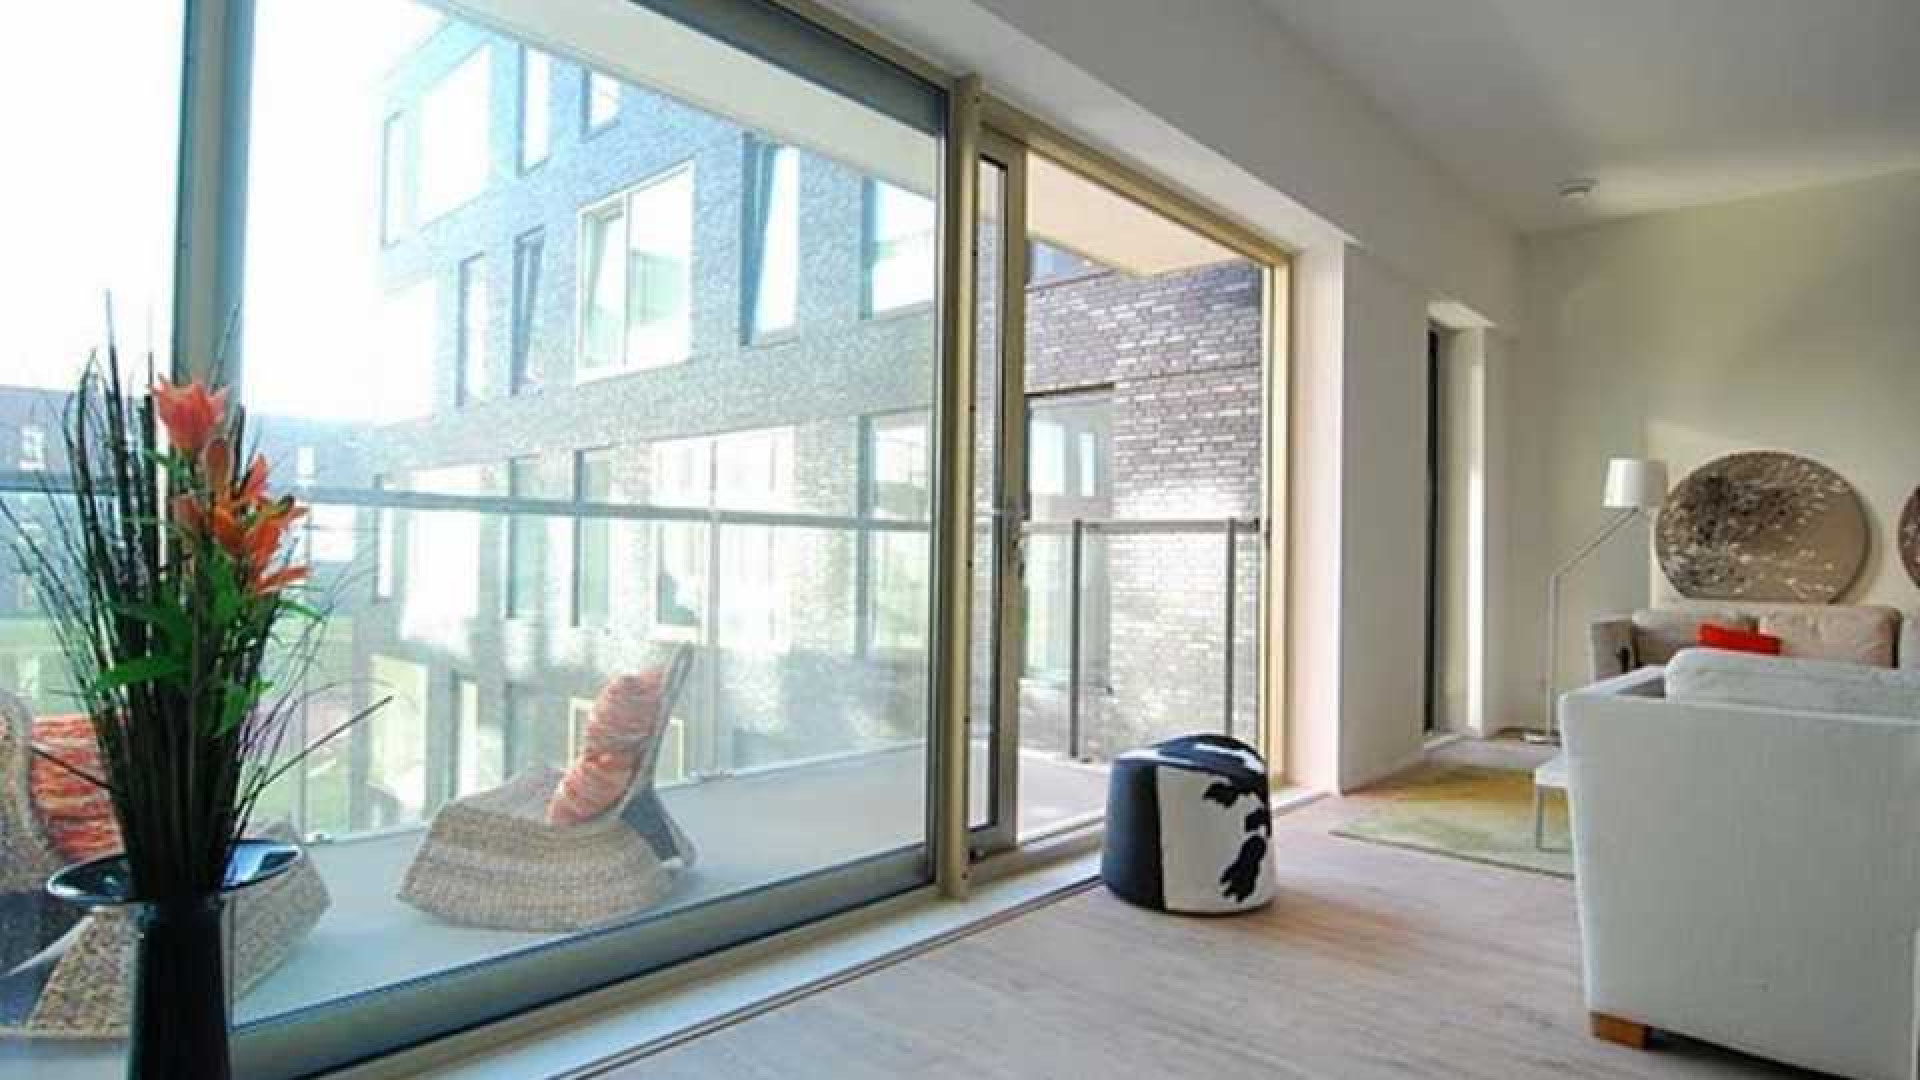 Ajax voetballer Joel Veltman huurt zeer luxe appartement aan de Zuid As in Amsterdam. Zie foto's 2